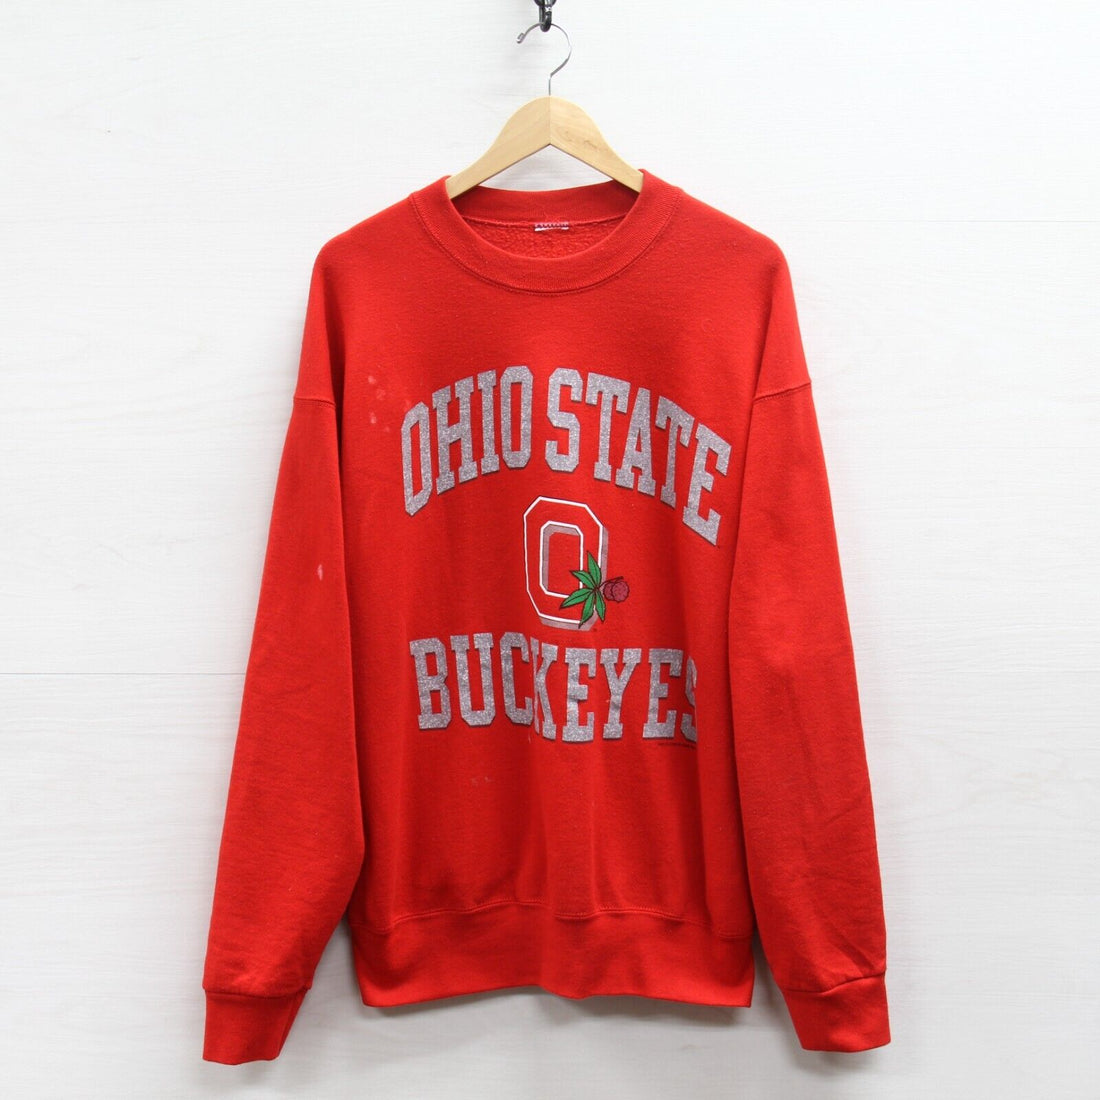 Vintage Ohio State Buckeyes Sweatshirt Crewneck Size XL Red NCAA